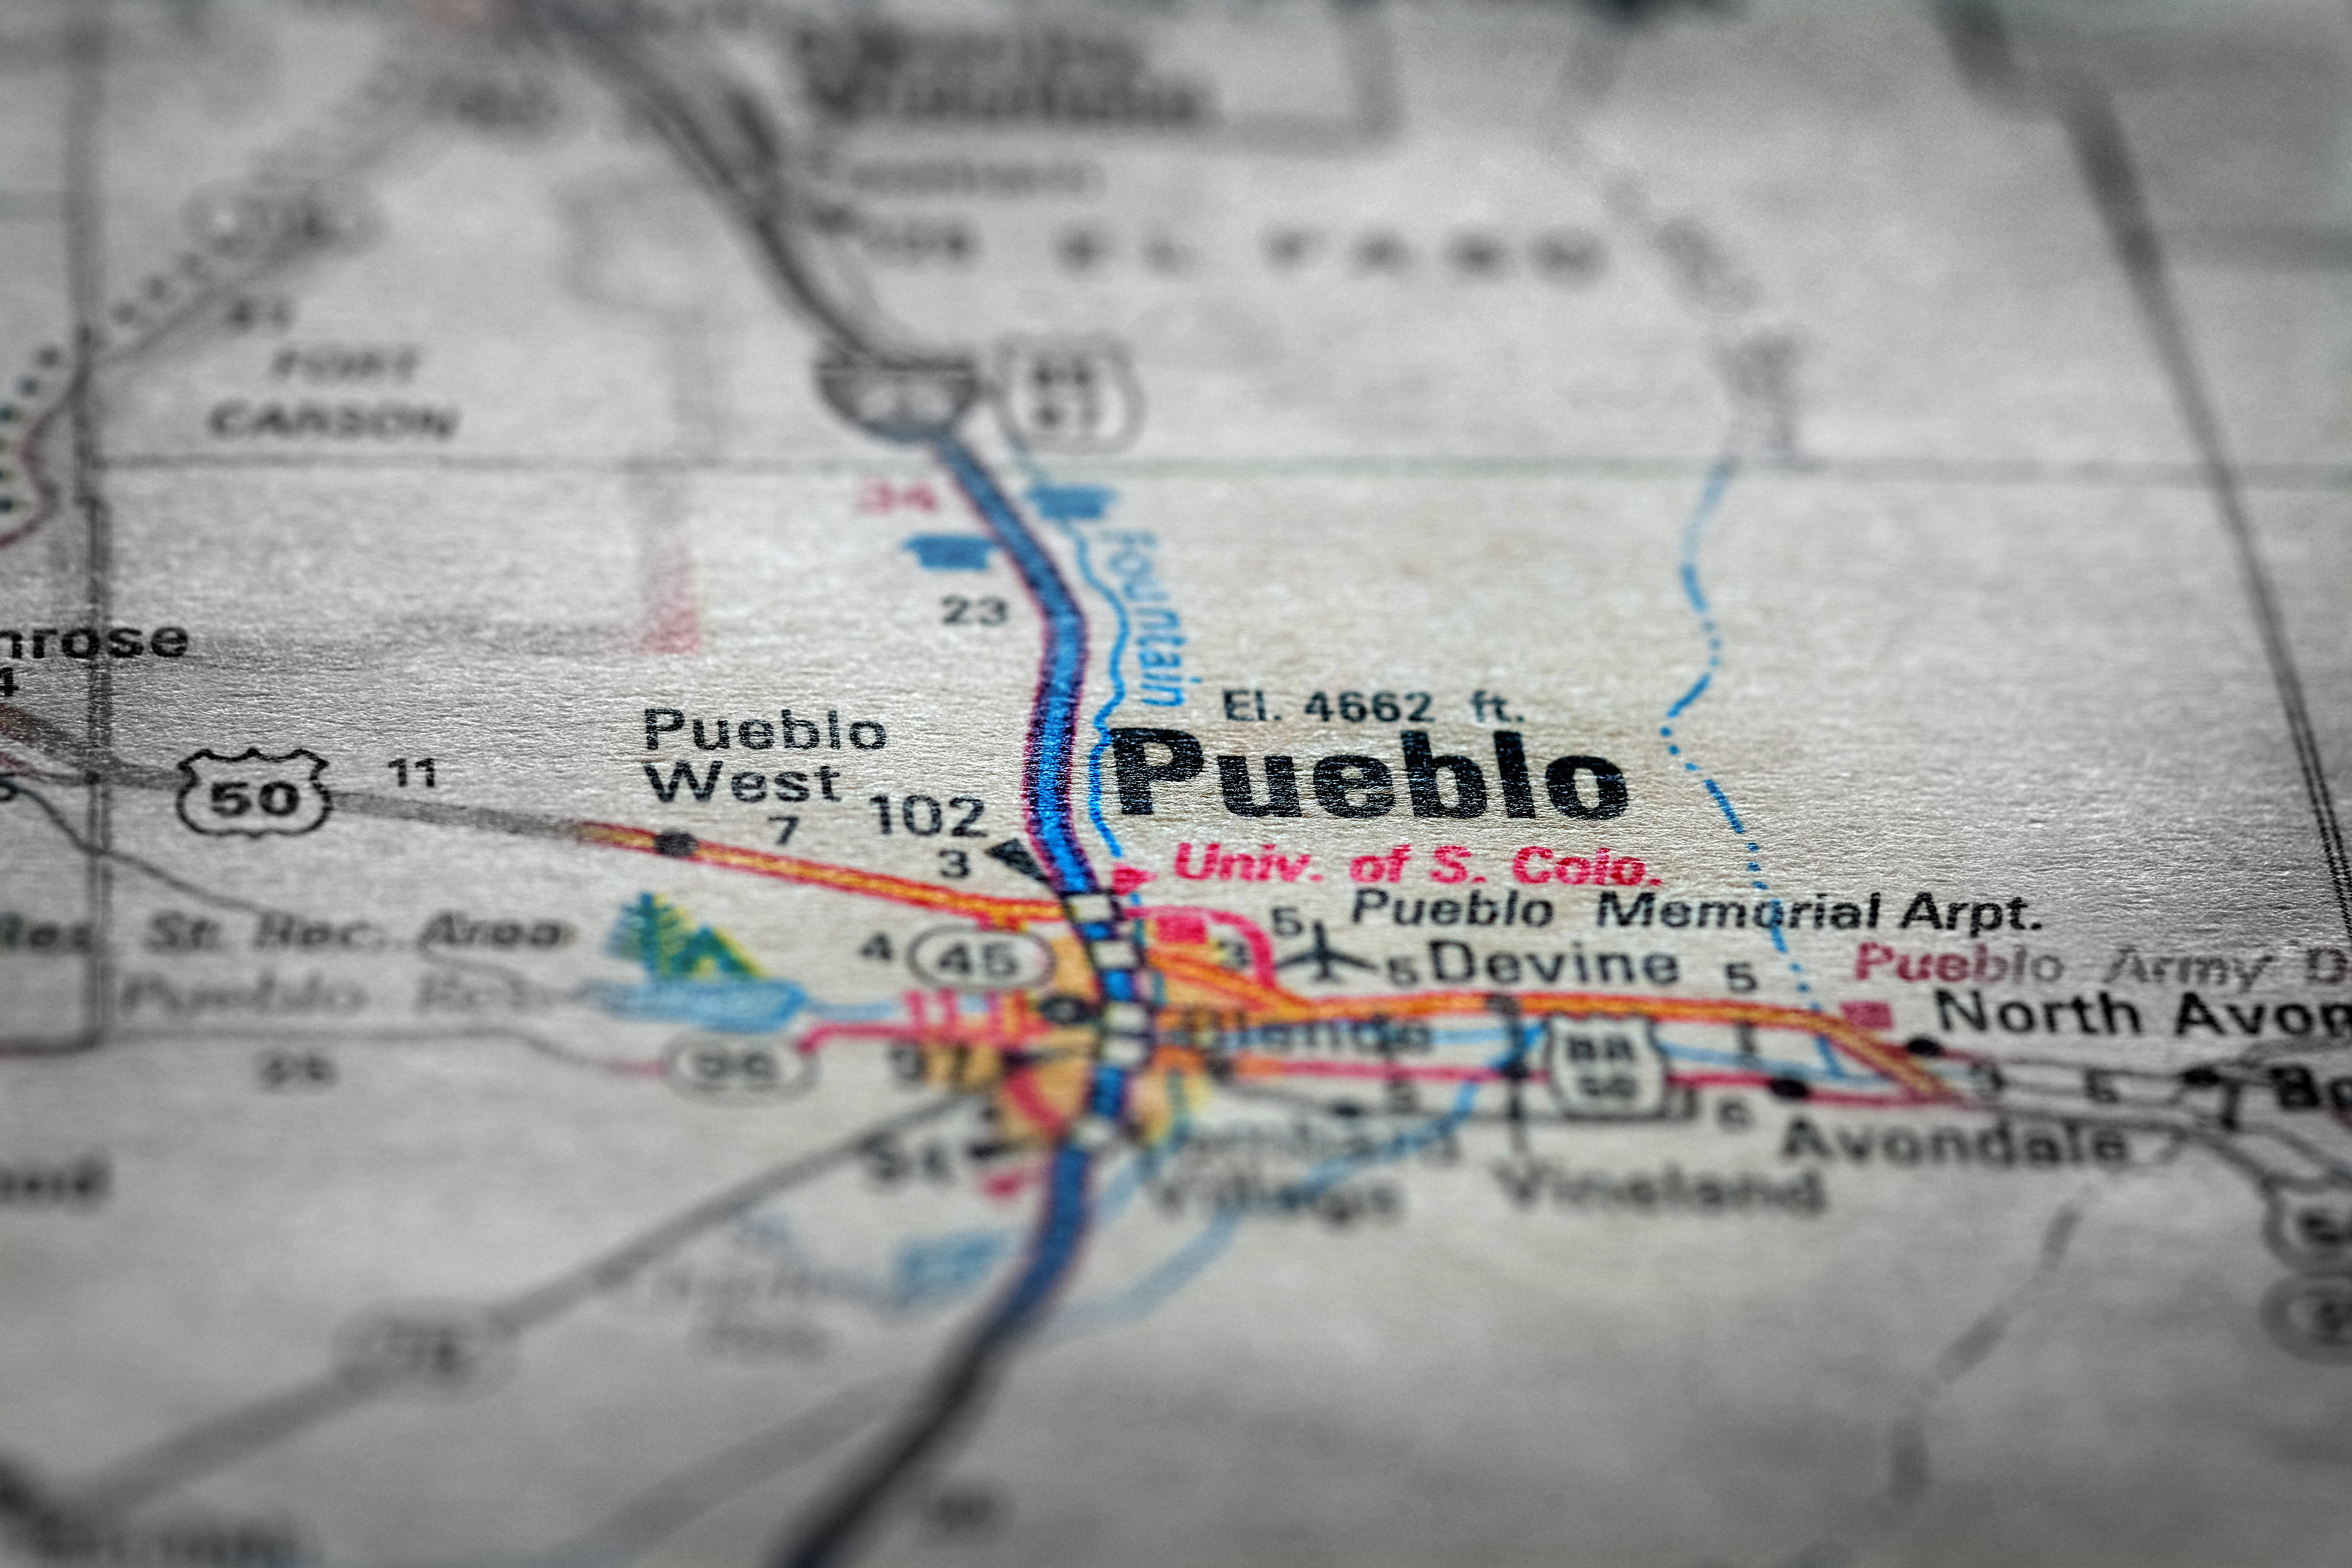 Travel to locations on map views paper destinations Pueblo Colorado